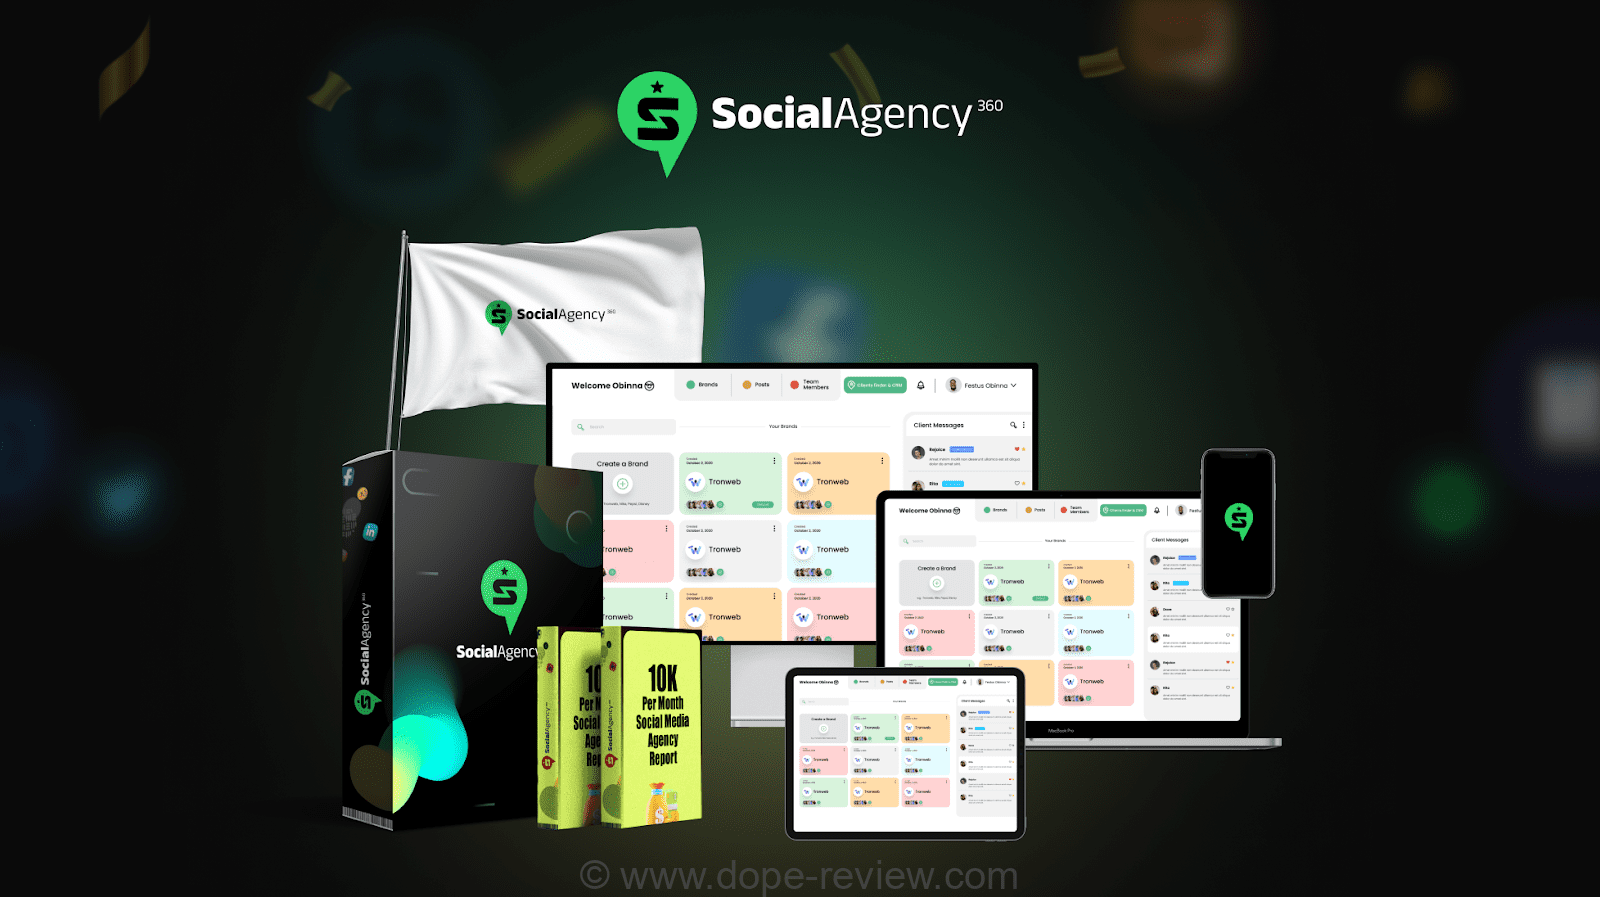 SocialAgency360